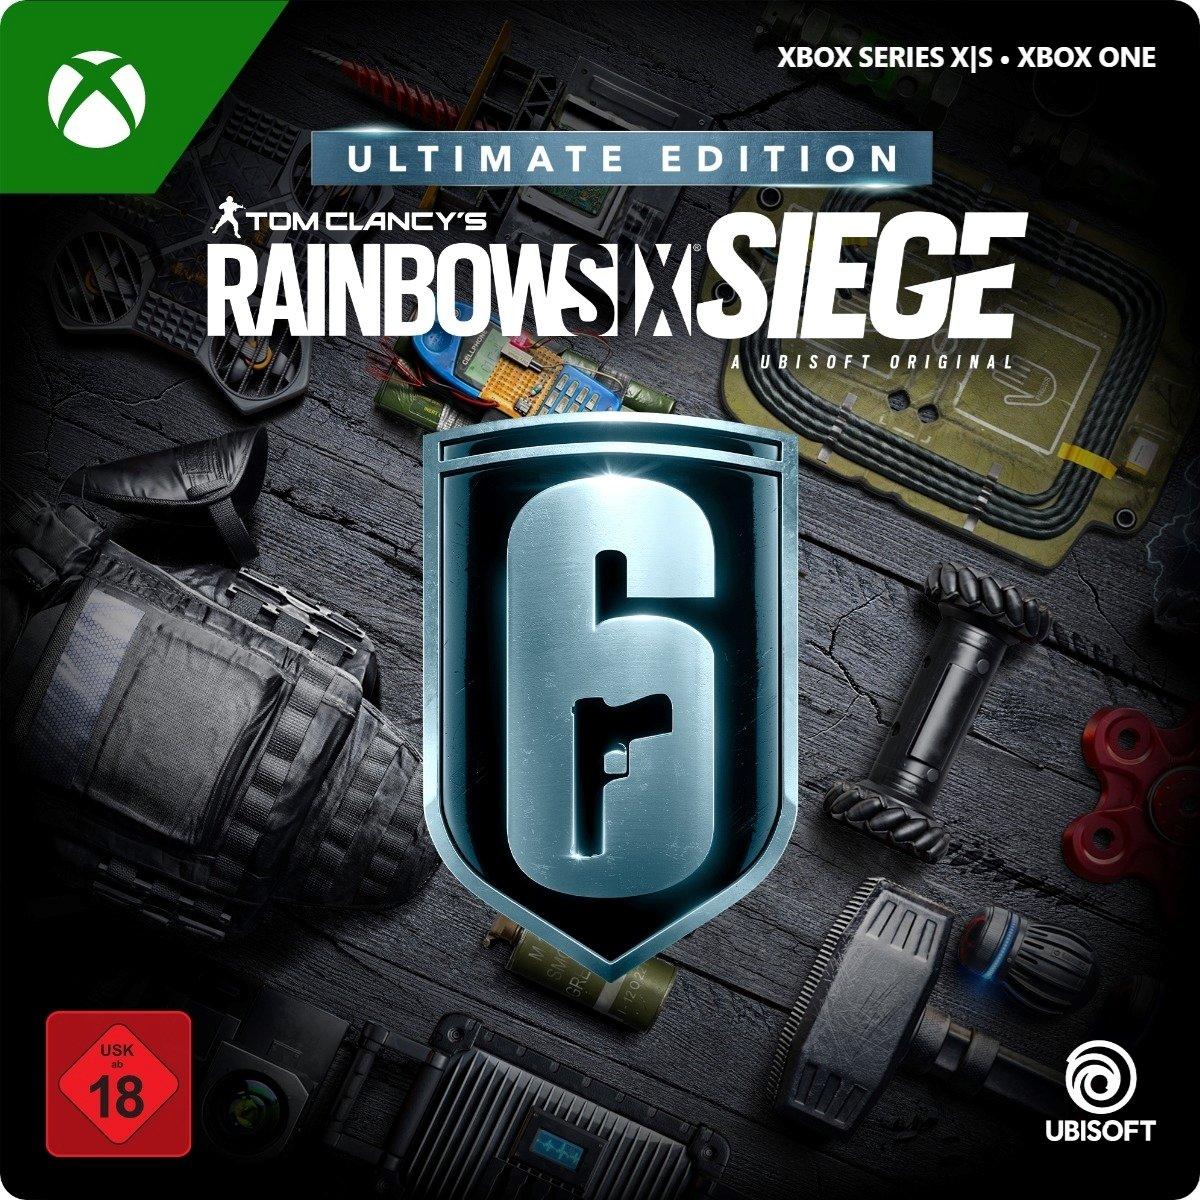 Tom Clancy's Rainbow Six Siege Y8 Ultimate Edition - Xbox Series X/Xbox One - Game | G3Q-01862 (dc6f3350-b10f-4f4e-bd97-ff5d260e4b0a)